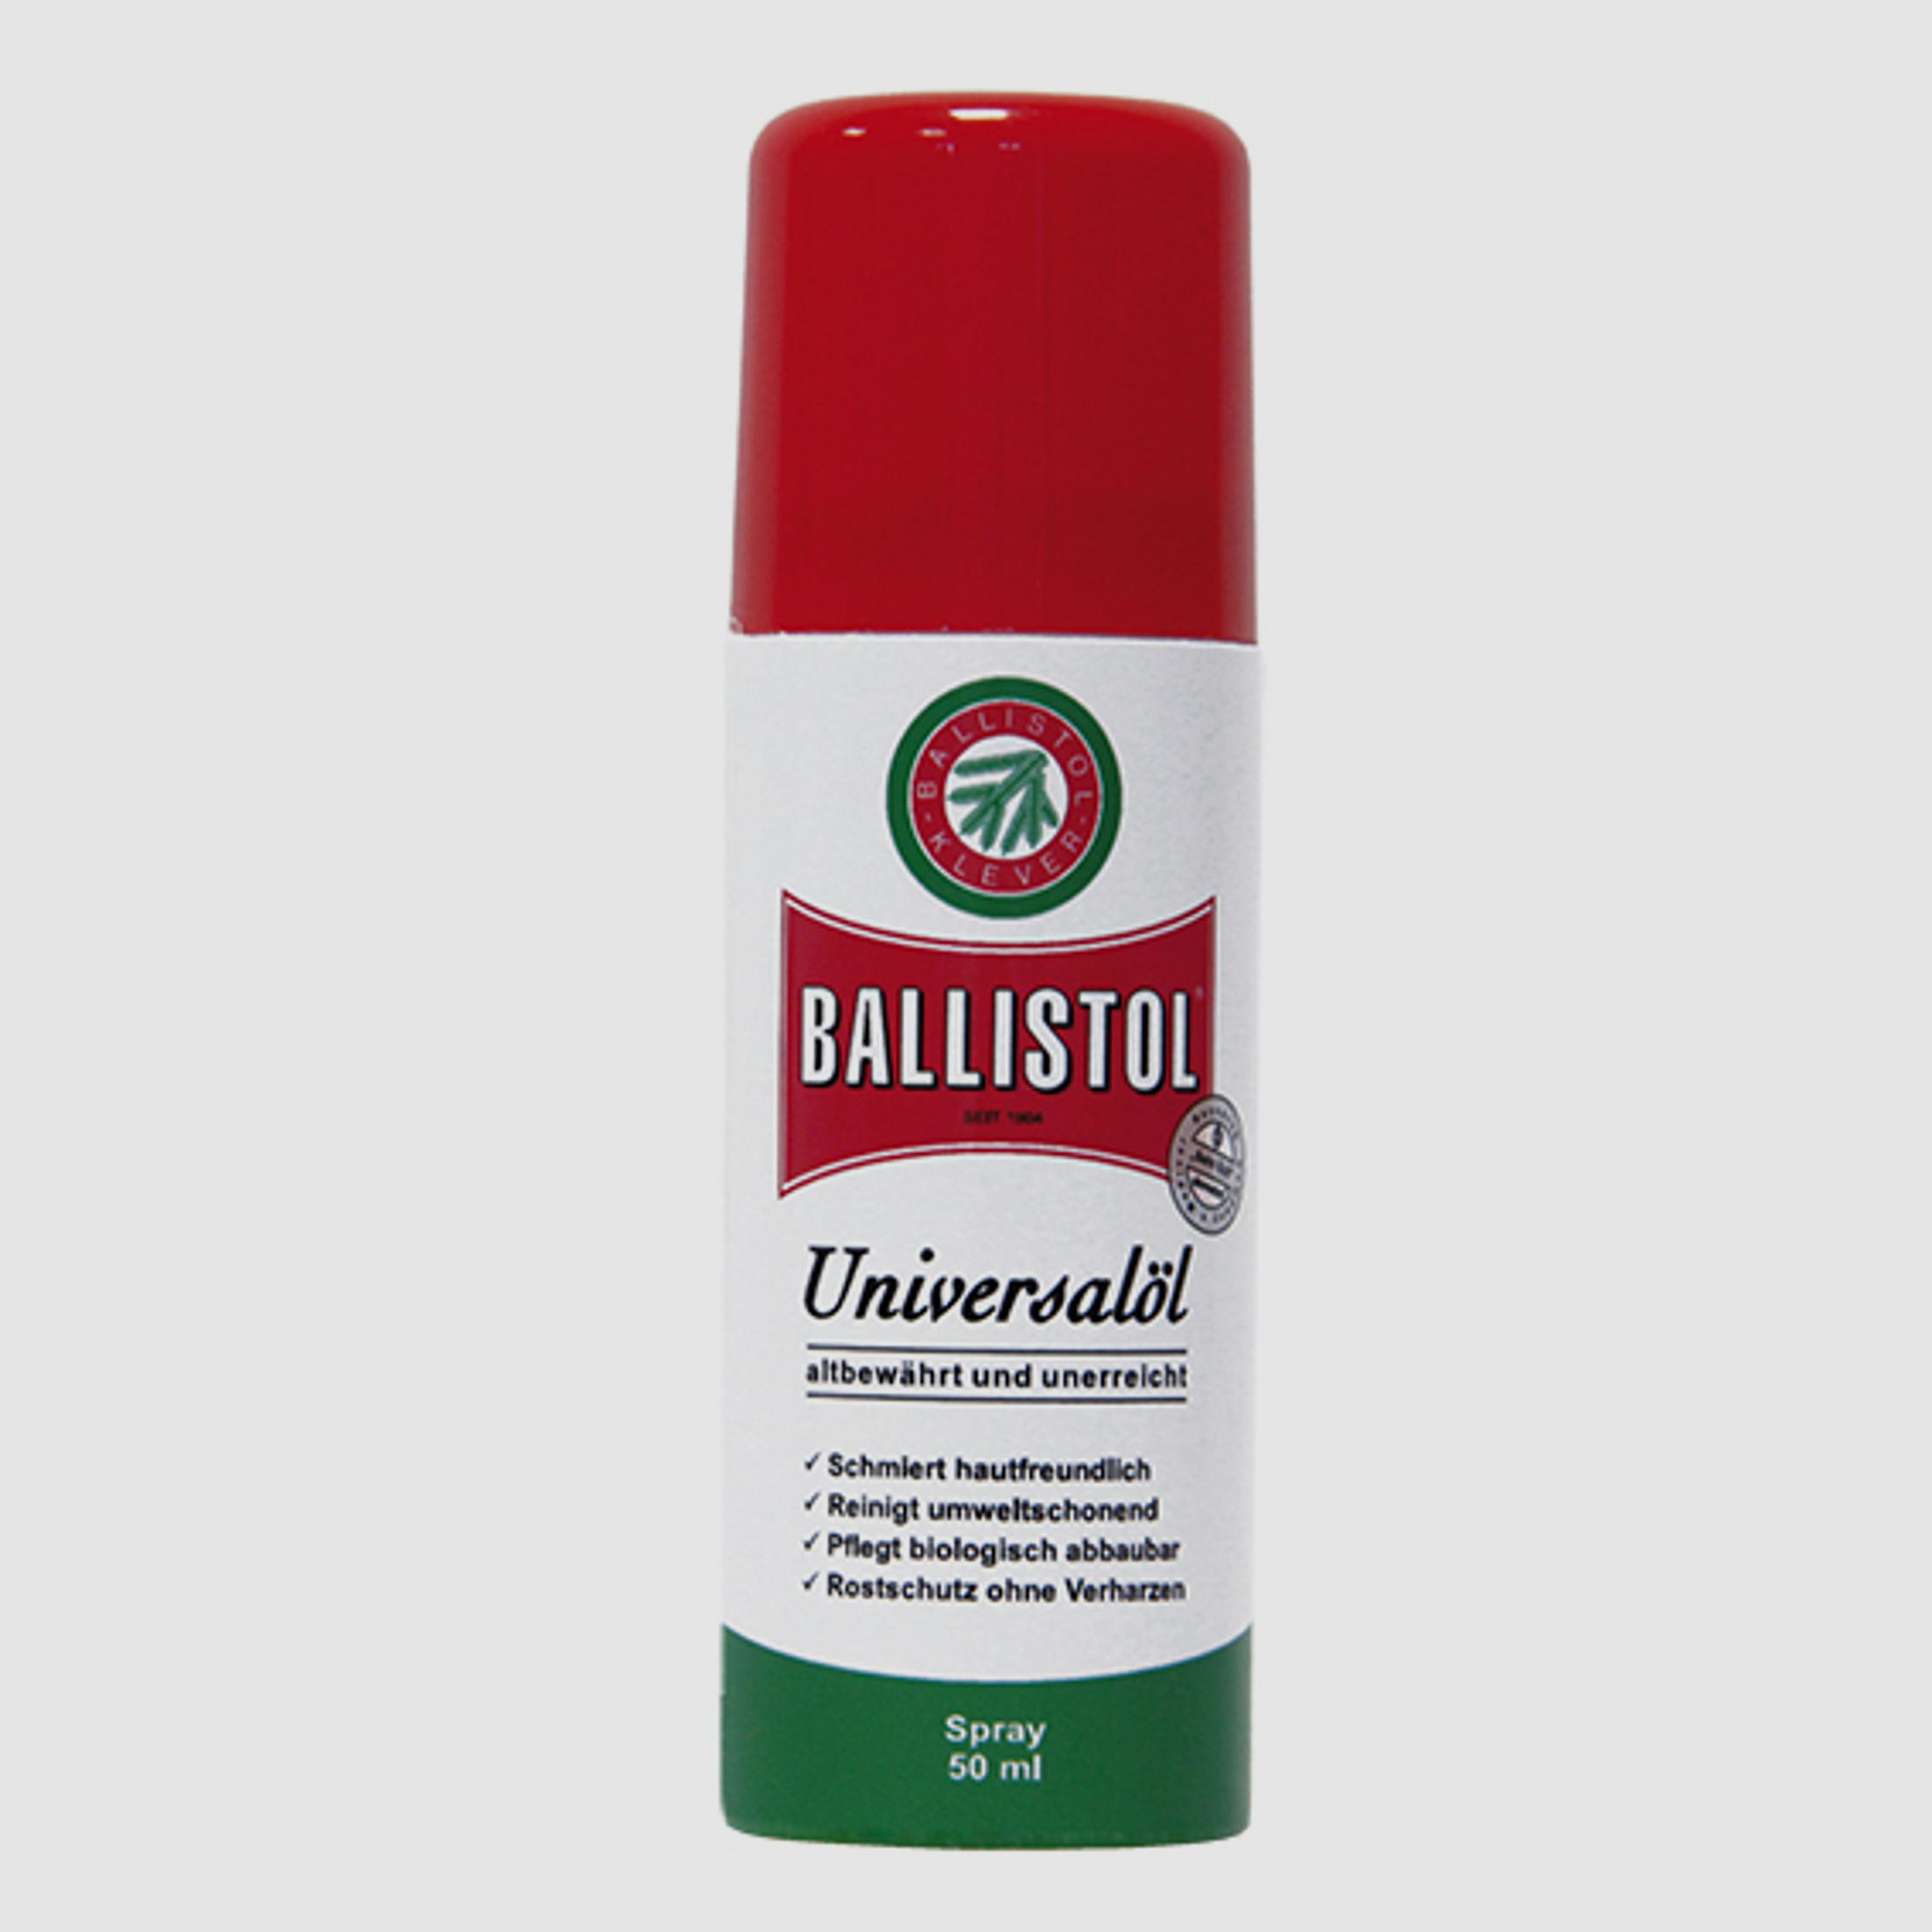 Ballistol Universalöl 50ml Spray #21450 | Waffenöl Waffen- Holz- und Lederpflege > FÜR UNTERWEGS!